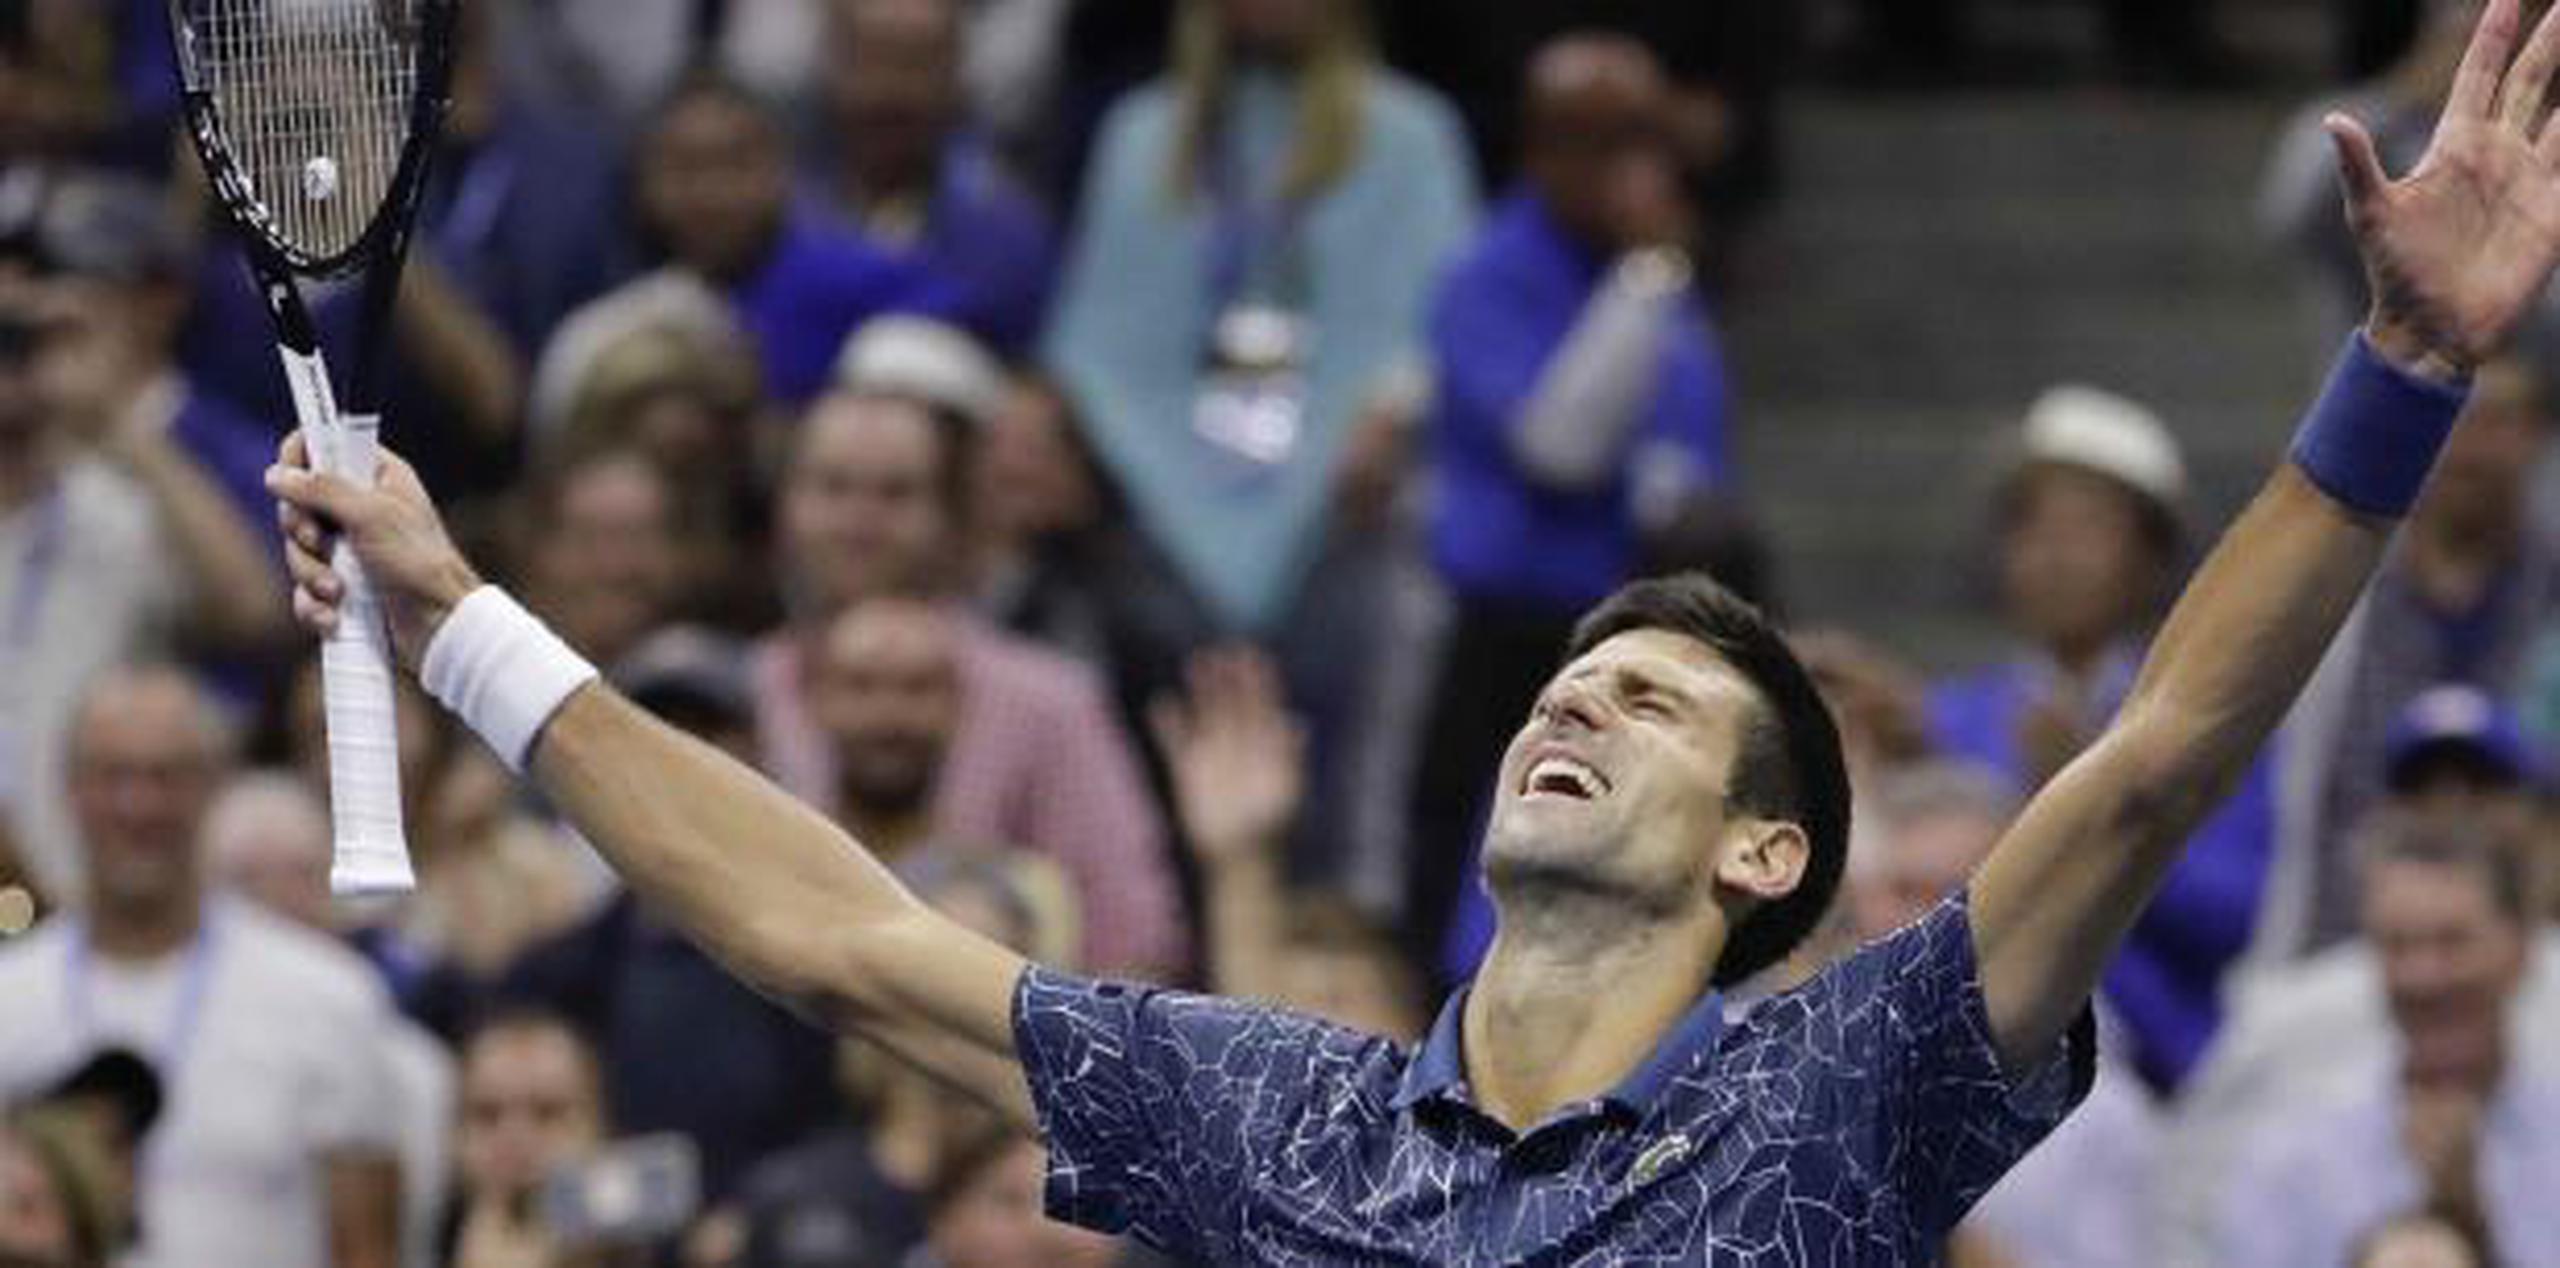 El triunfo el domingo en tres sets ante el argentino Juan Martín del Potro permitió a Djokovic llegar a 14 títulos de Grand Slam, igualando en el tercer puesto de la lista histórica a su ídolo Peter Sampras. (AP)